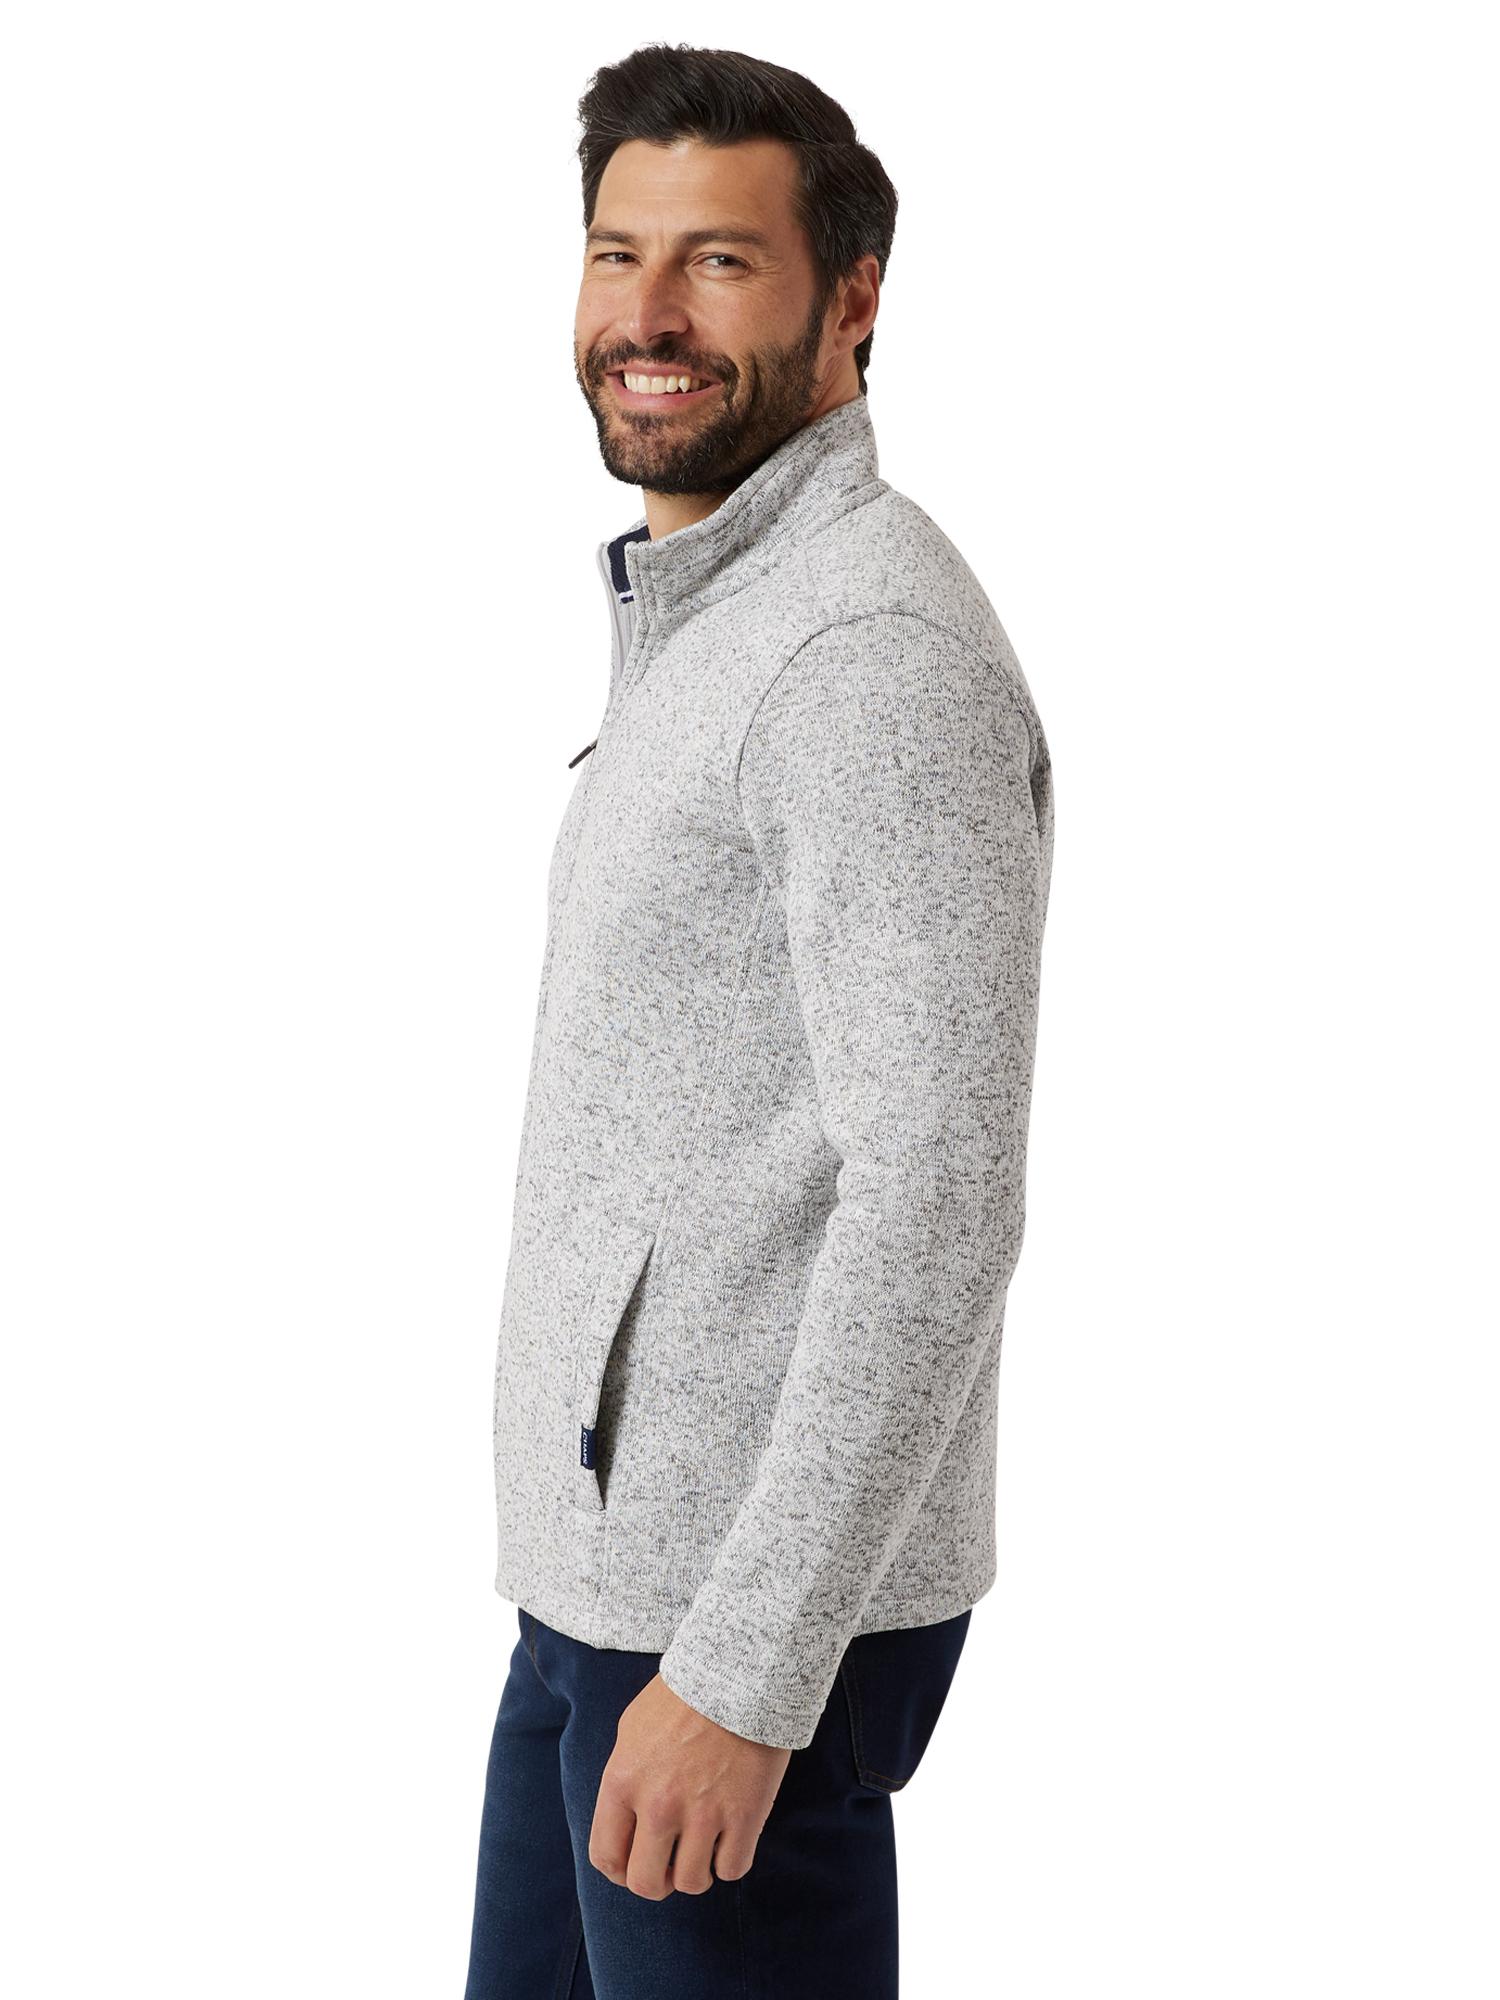 Chaps Men's & Big Men's Full Zip Sweater Fleece - image 3 of 7